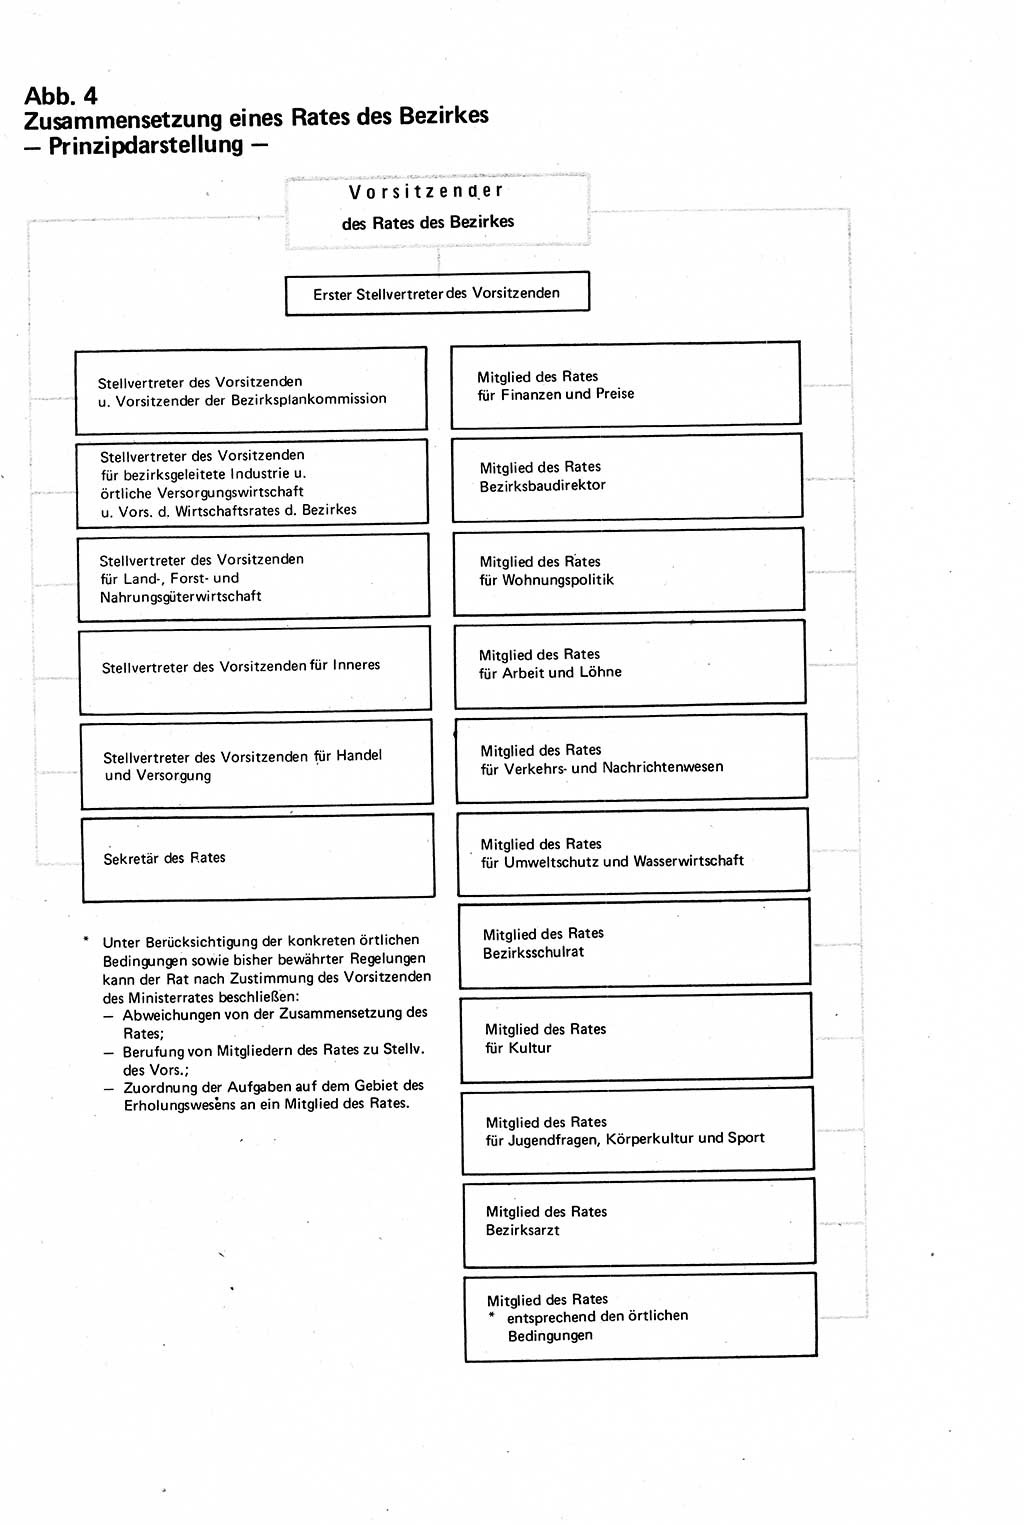 Verwaltungsrecht [Deutsche Demokratische Republik (DDR)], Lehrbuch 1979, Seite 133 (Verw.-R. DDR Lb. 1979, S. 133)